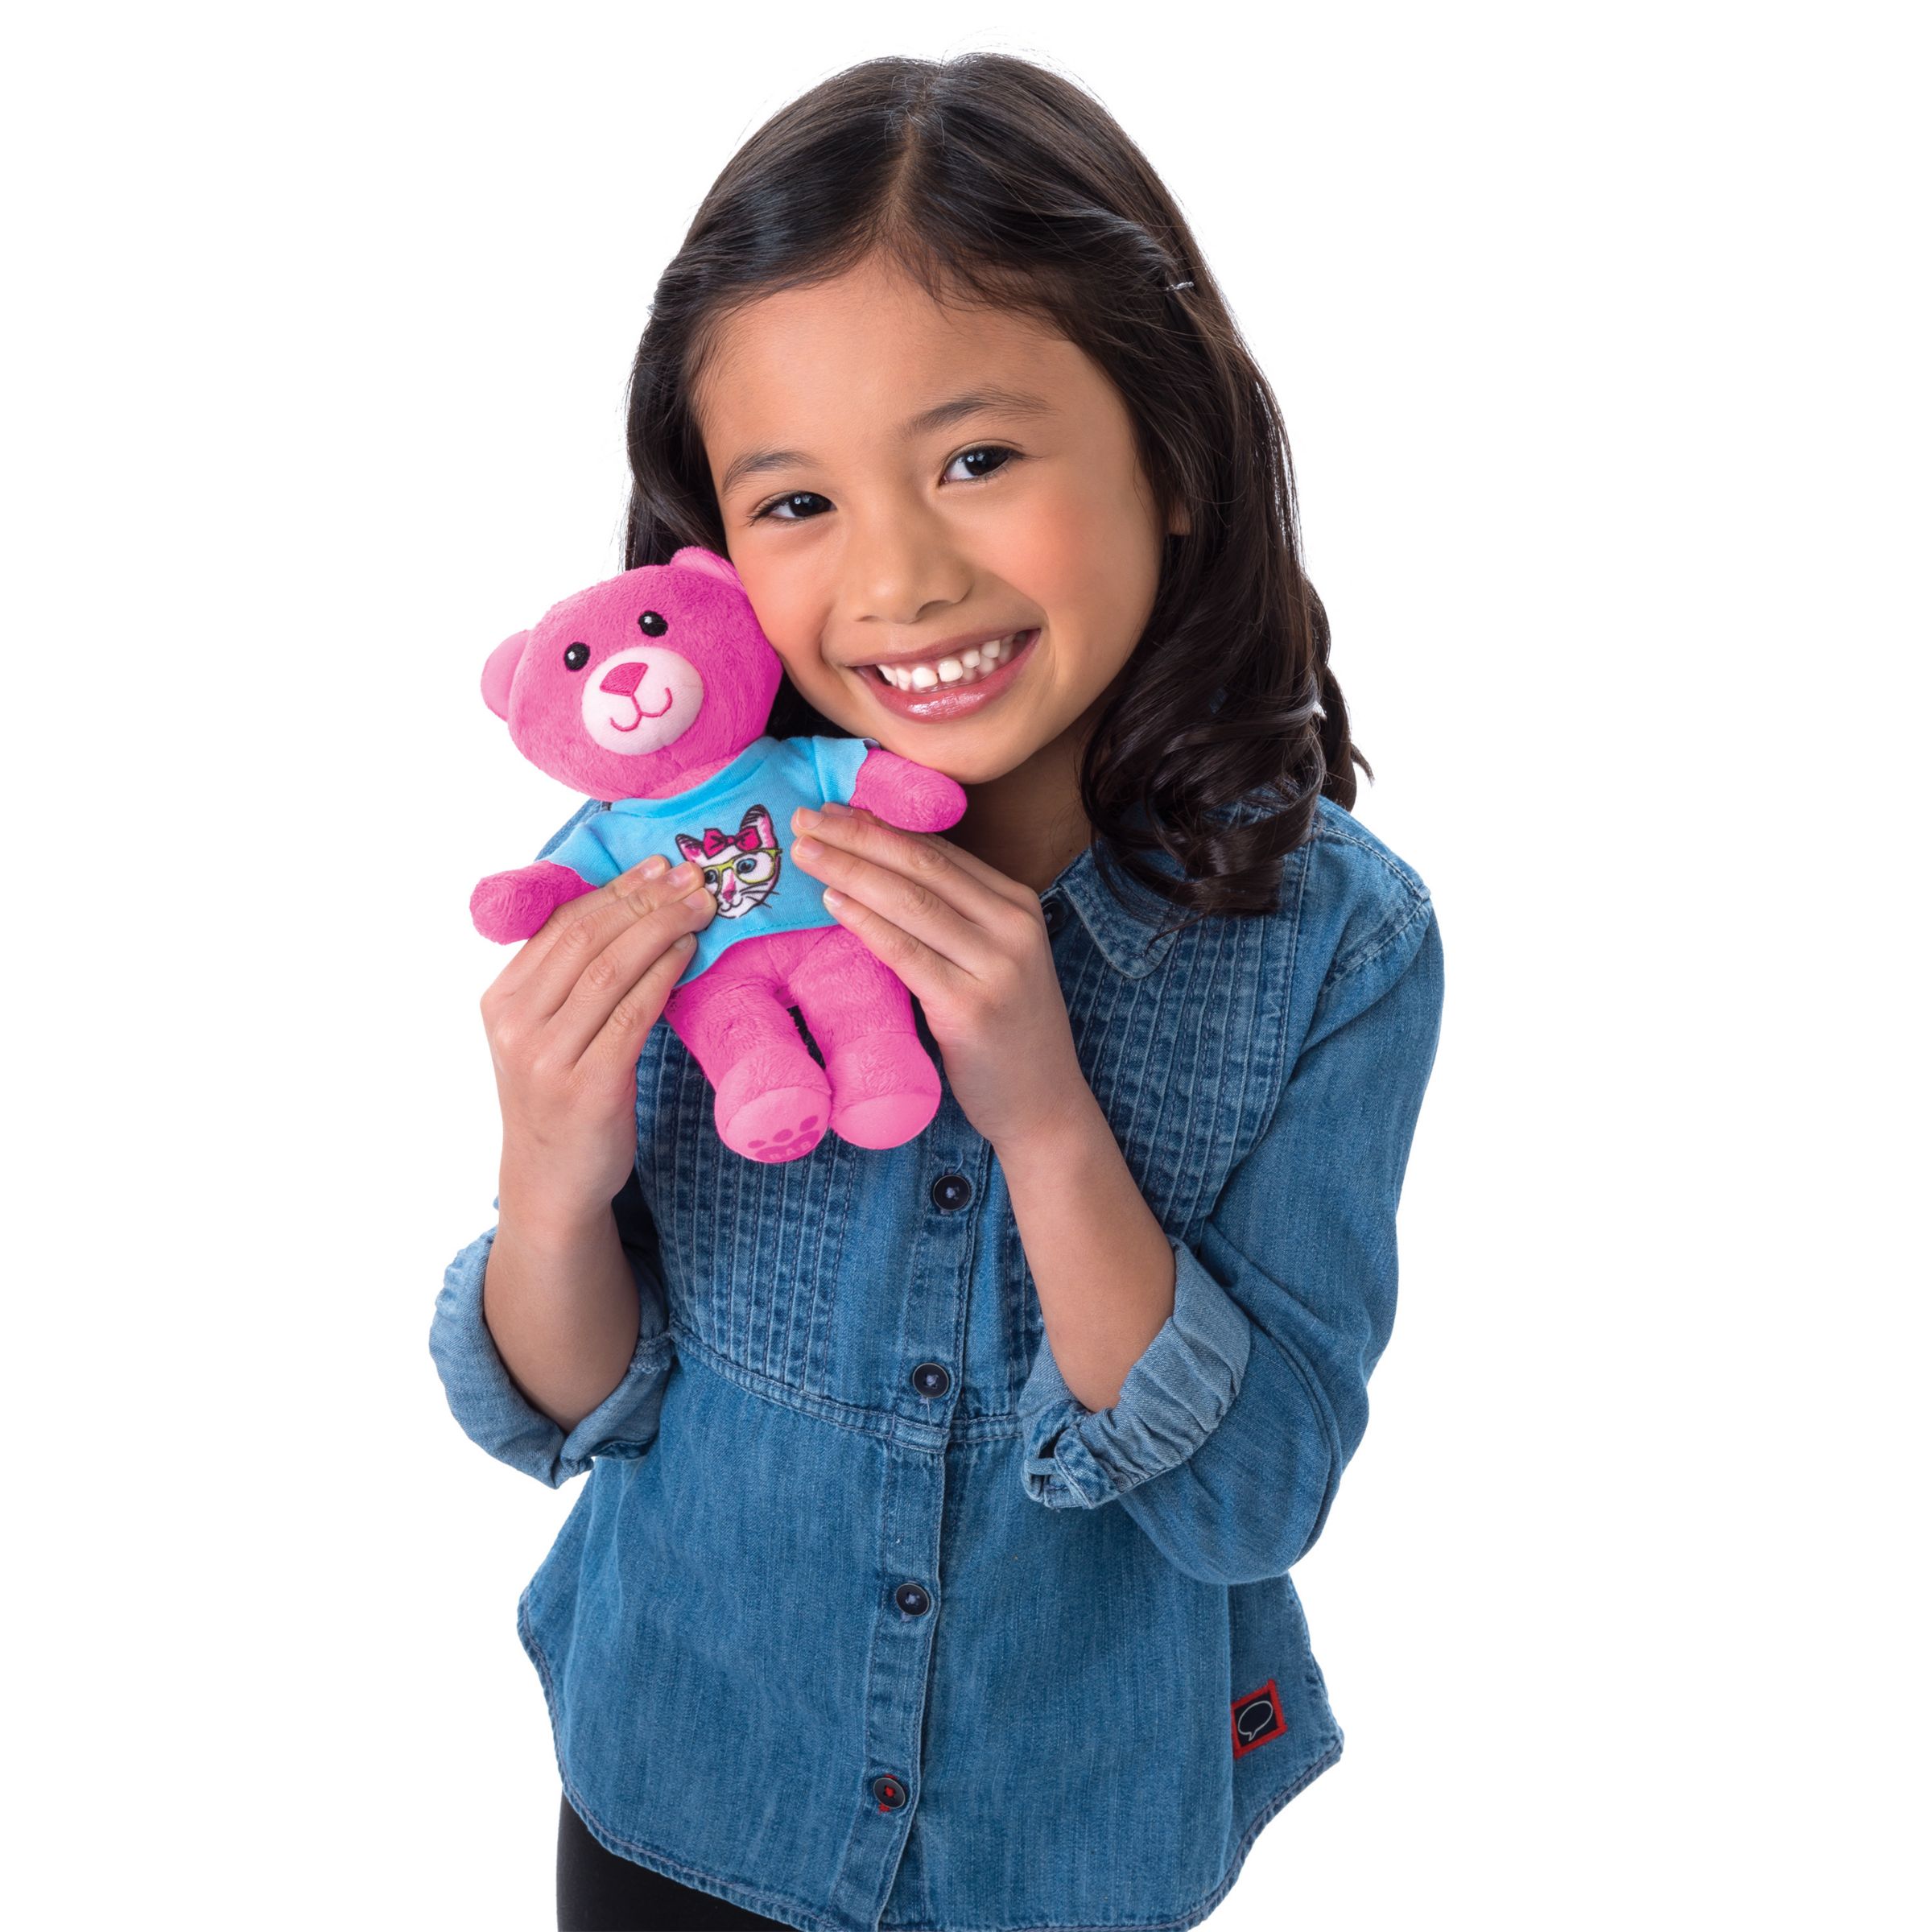 Топовые игрушки. Build-a-Bear студия мягкой игрушки. Популярные игрушки для детей. Игрушки для девочек 6 лет. Самые популярные игрушки для девочек.